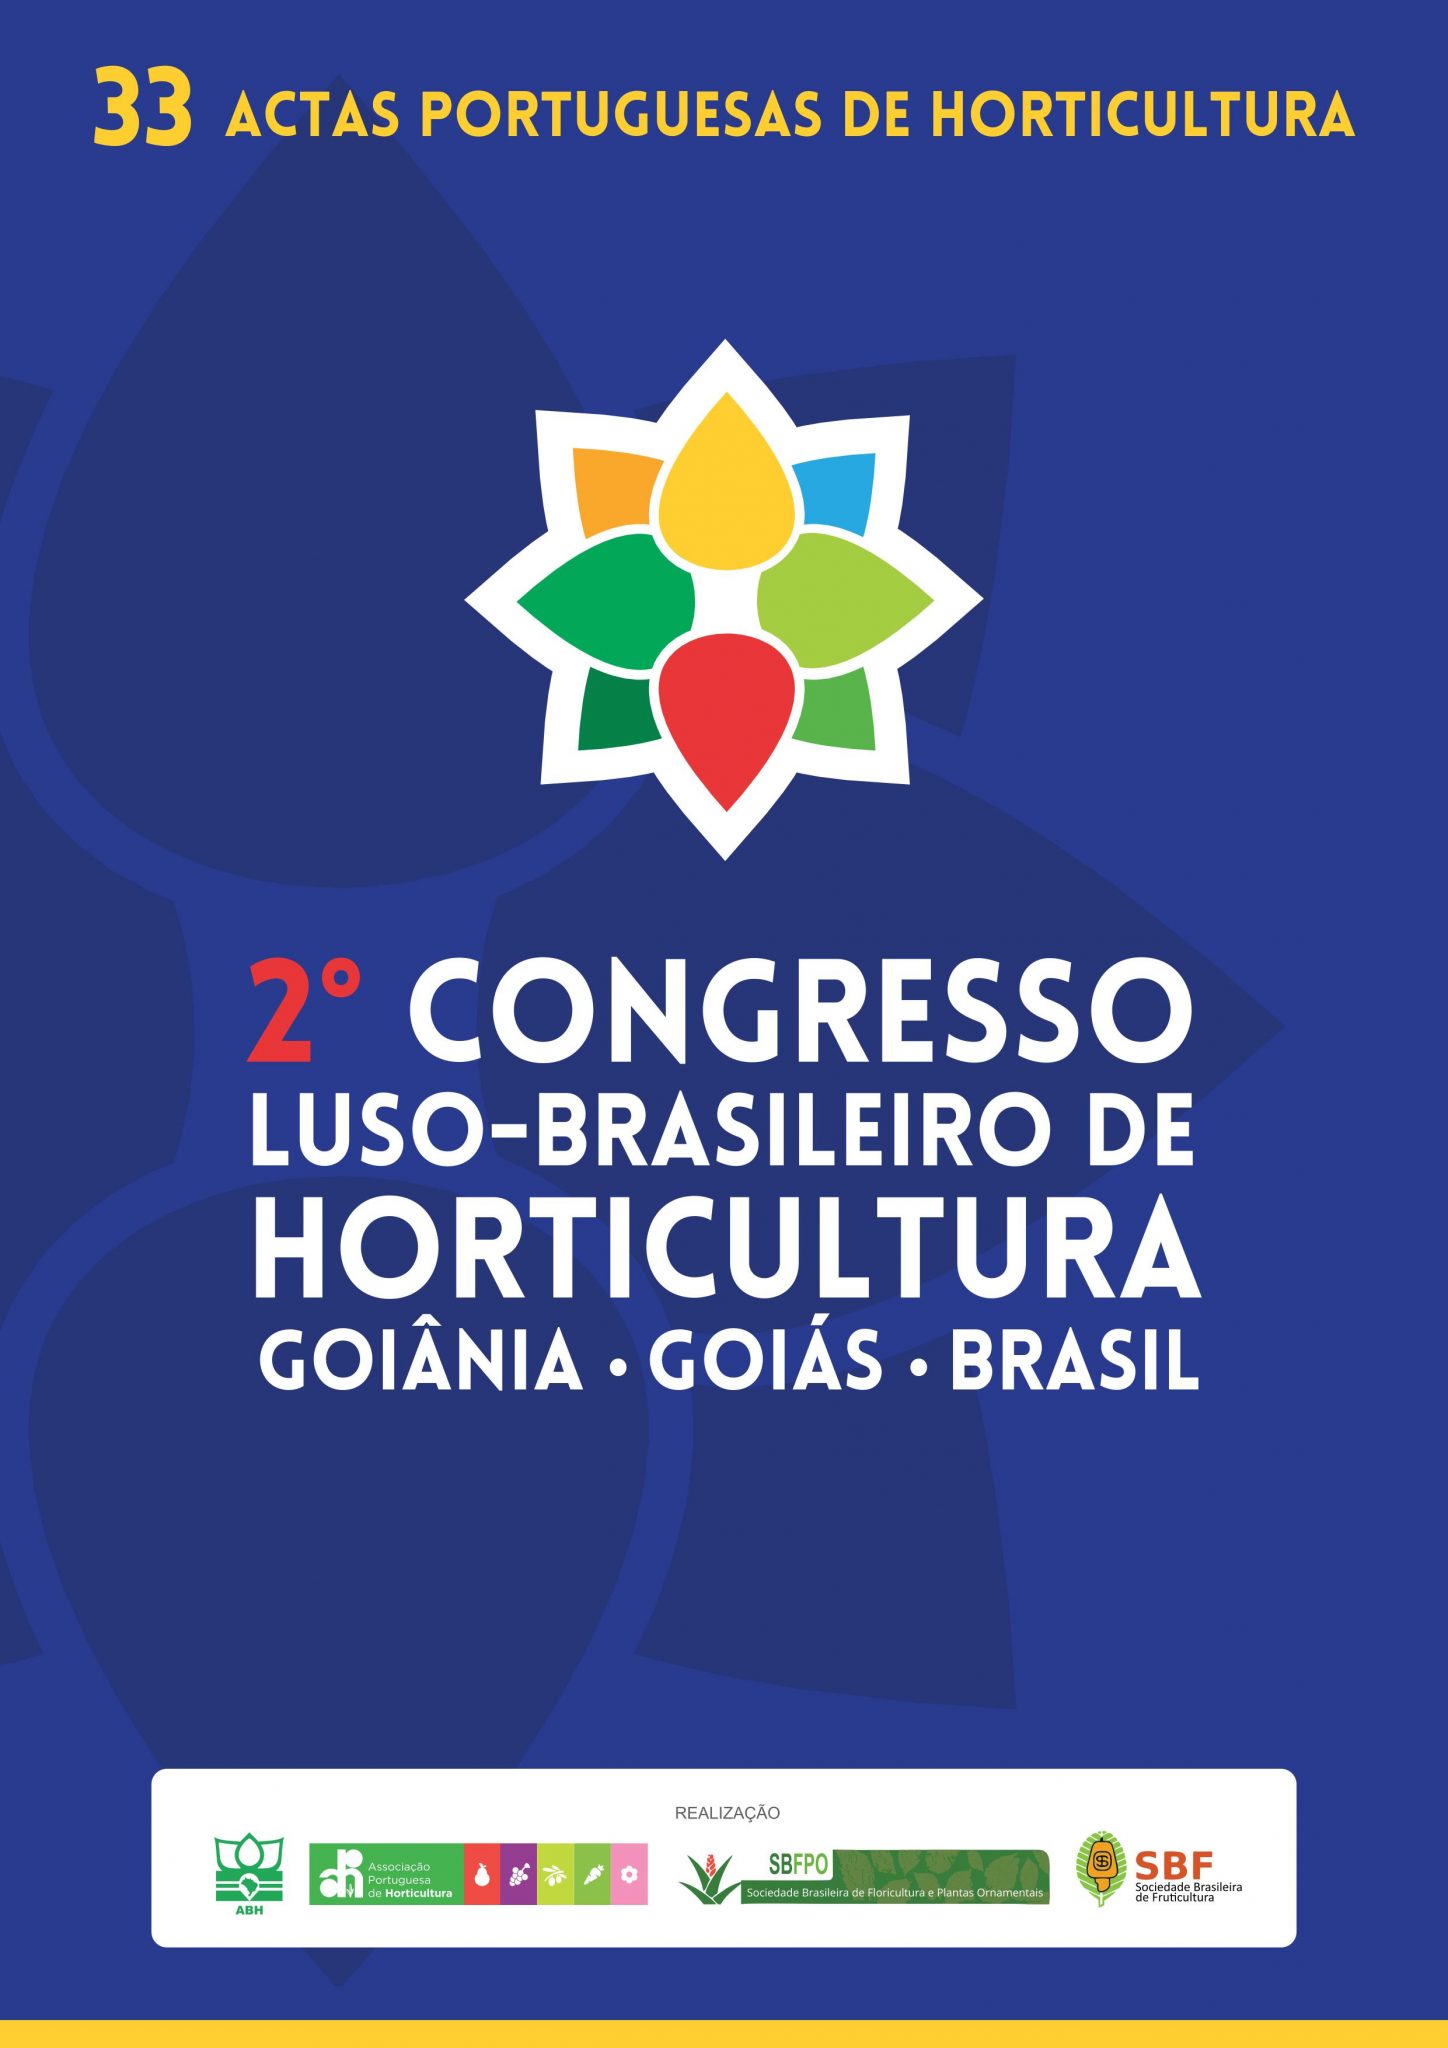 Actas Portuguesas de Horticultura Nº33